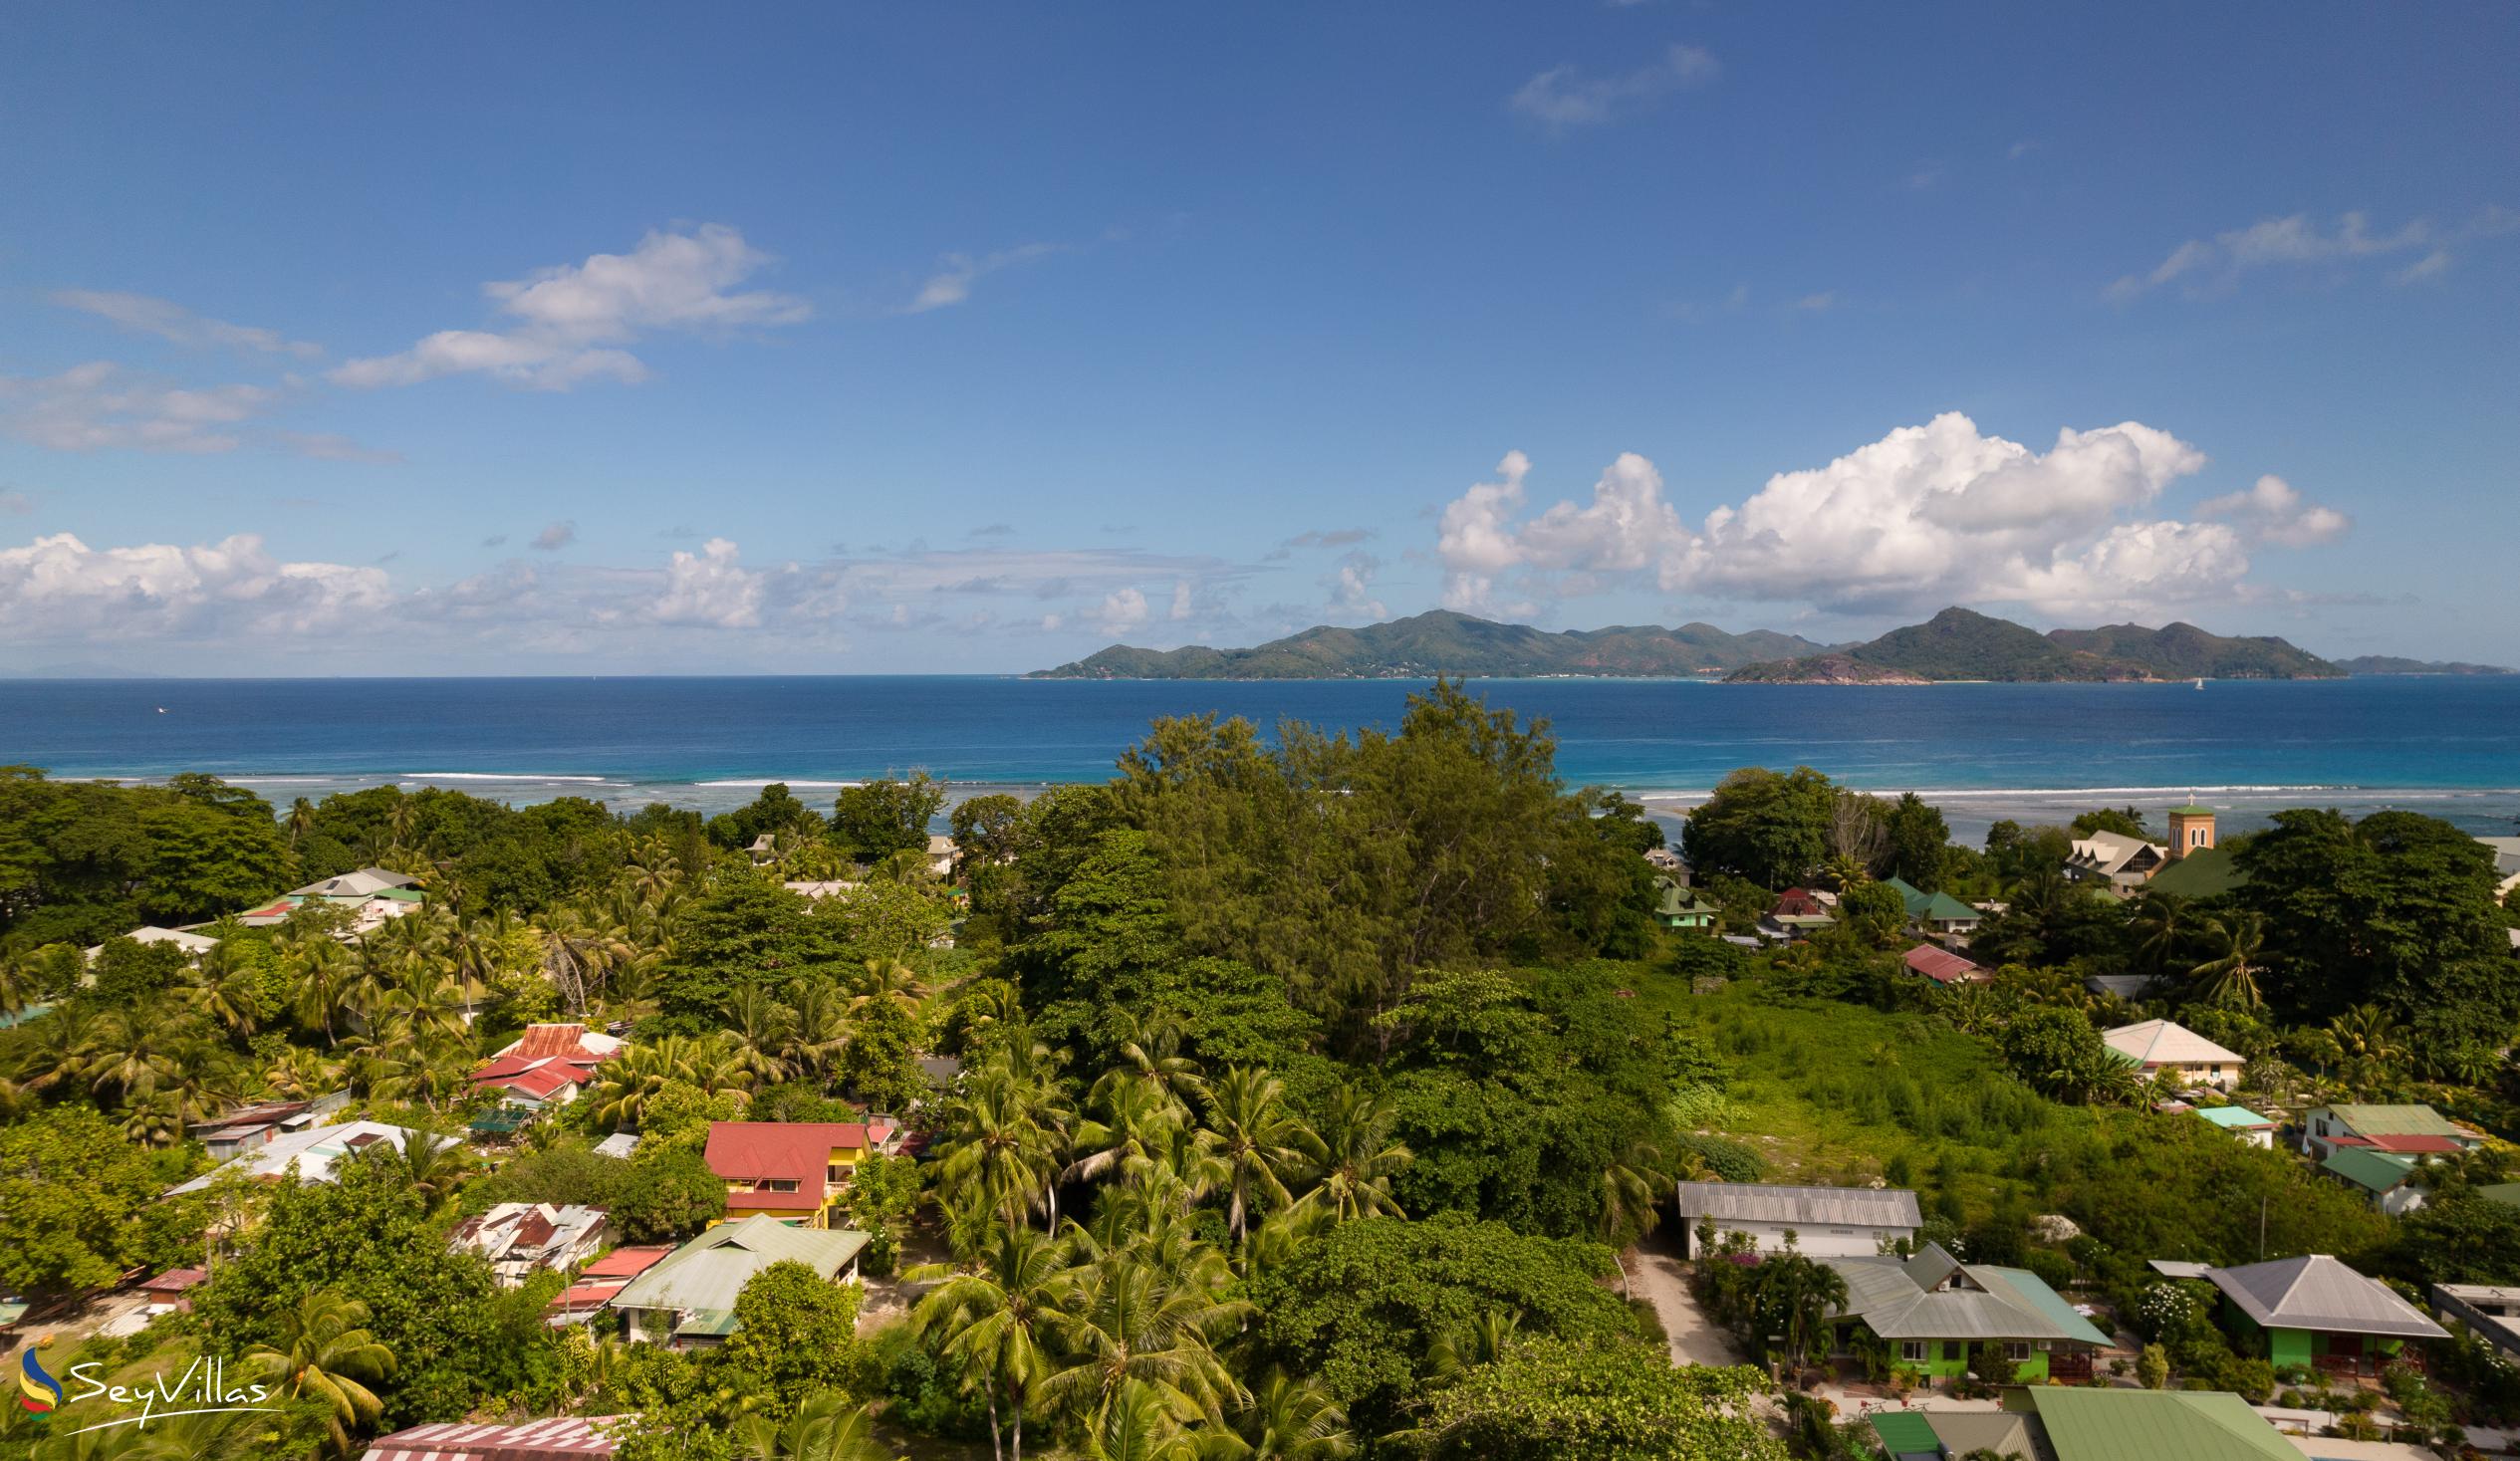 Foto 29: Coco de Mahi - Location - La Digue (Seychelles)